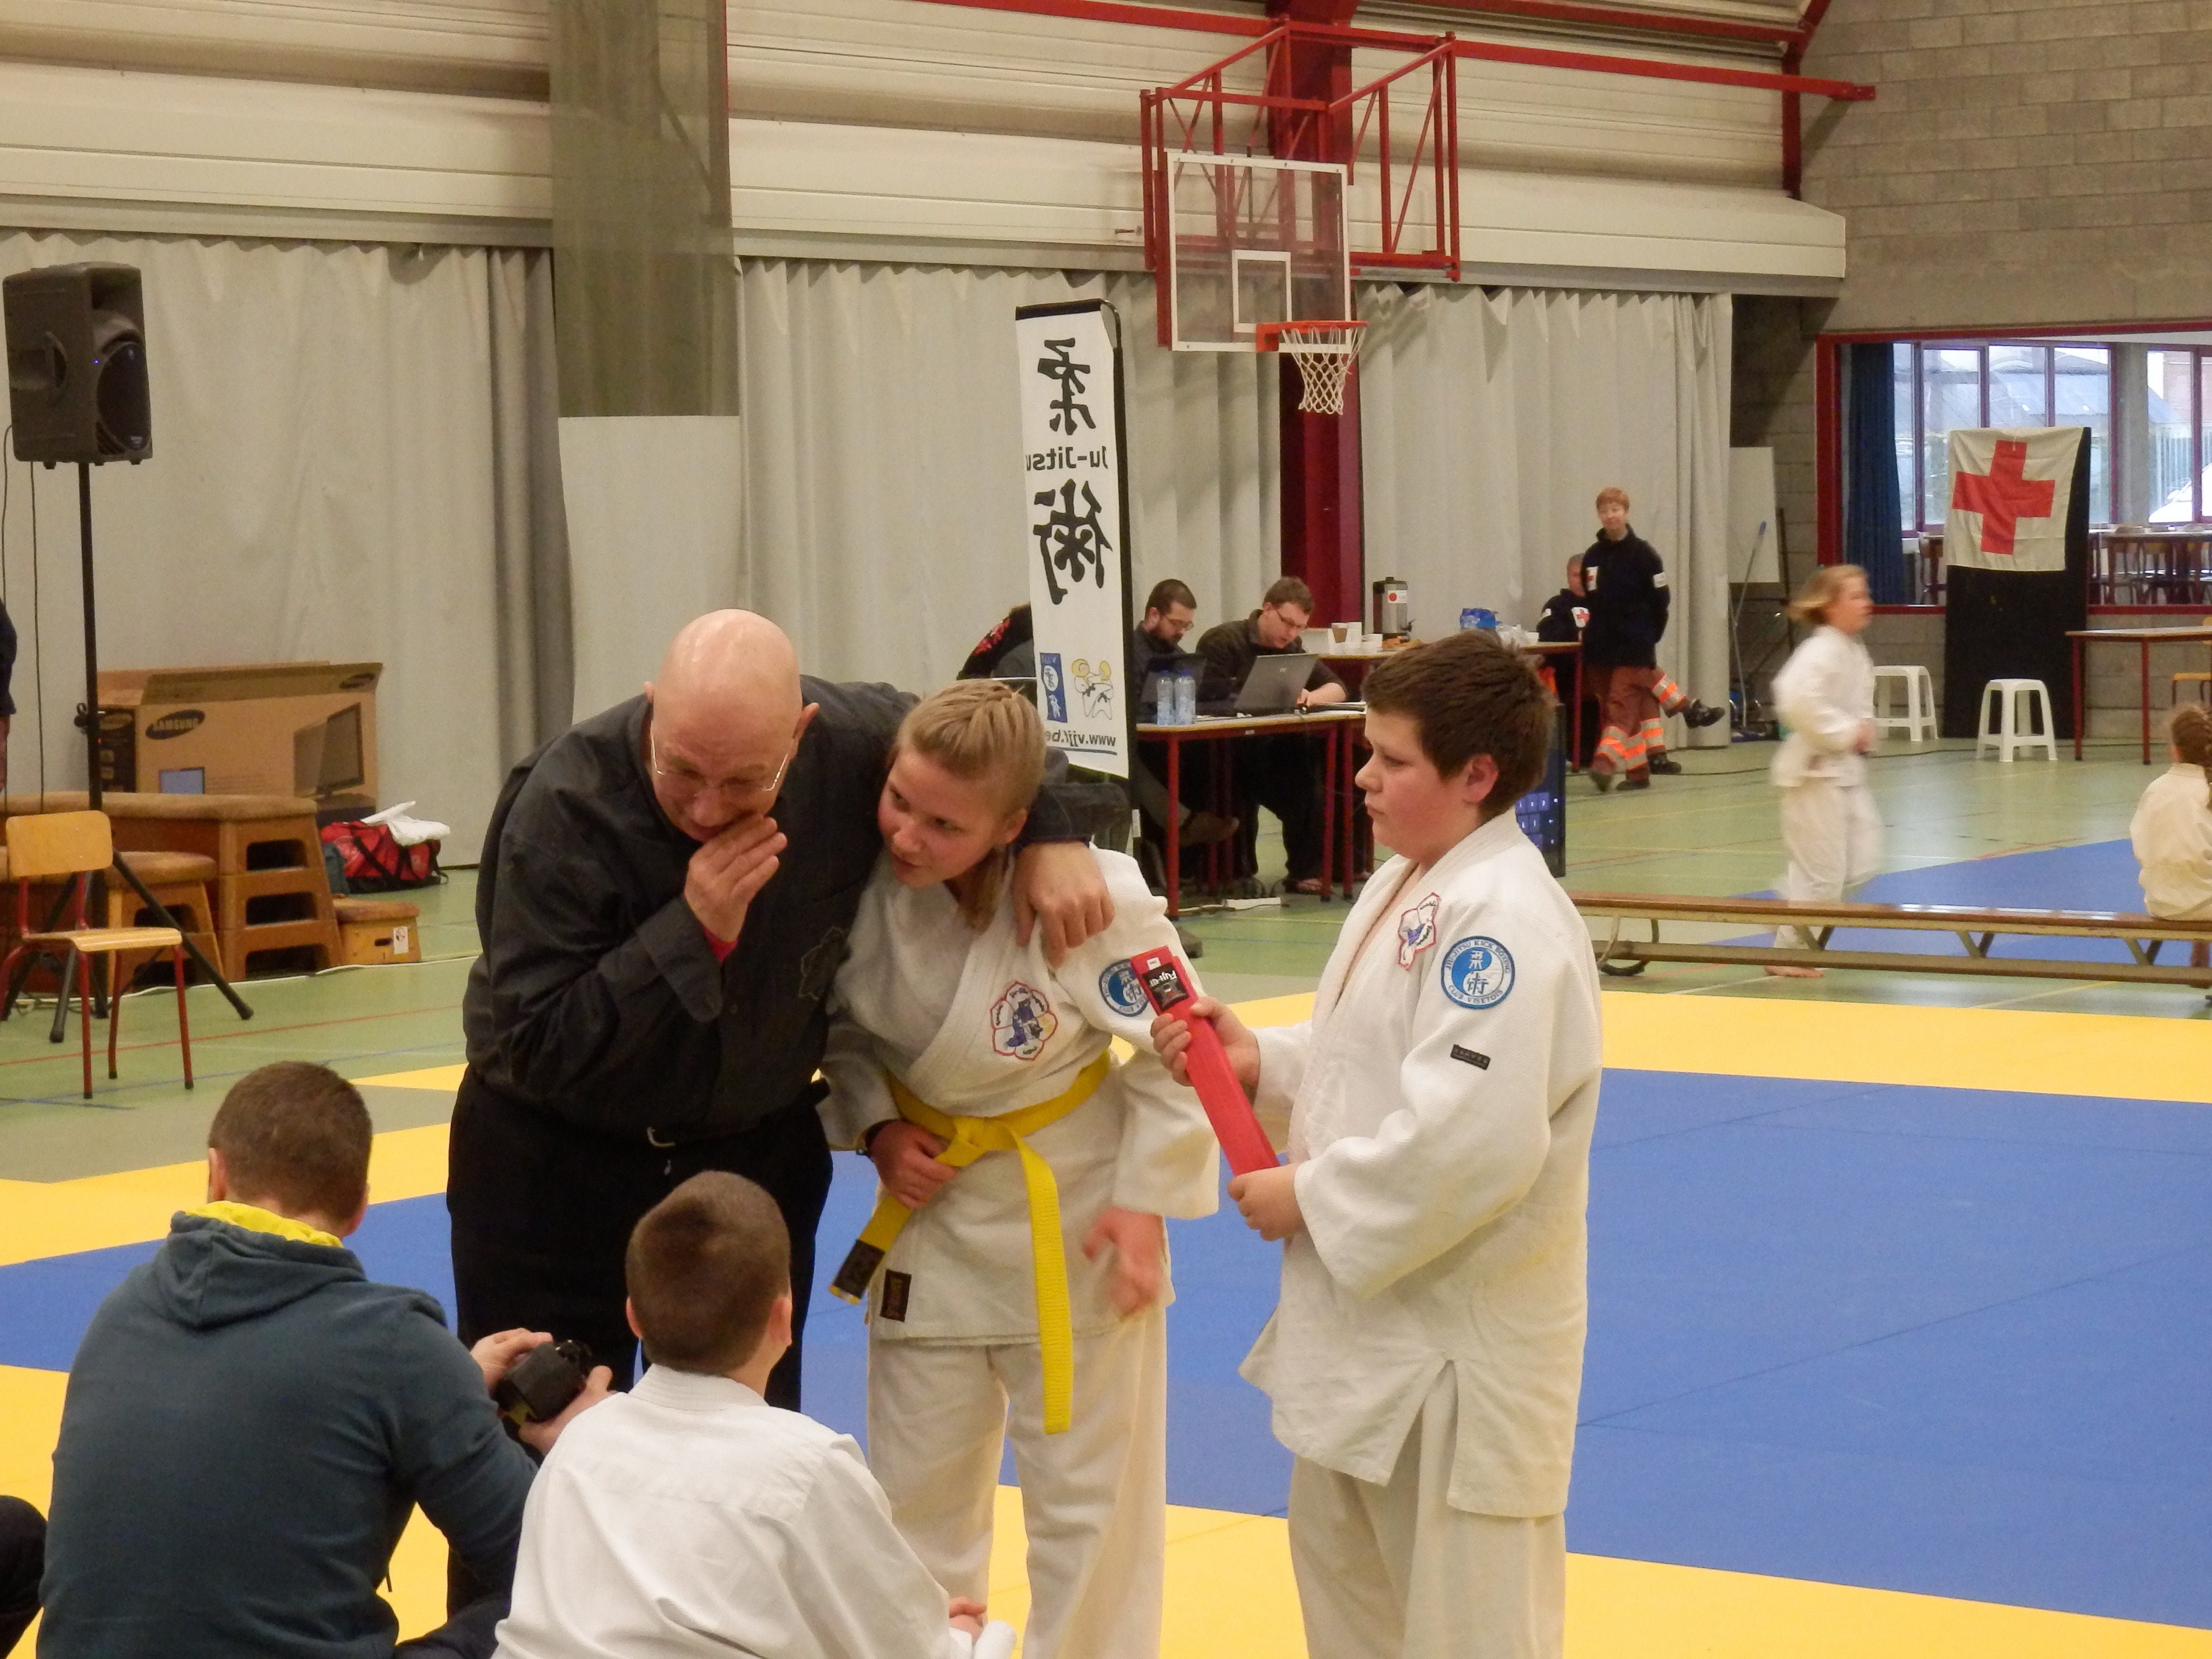 Compétition Jiu-jitsu Denderleeuw 10/03/13